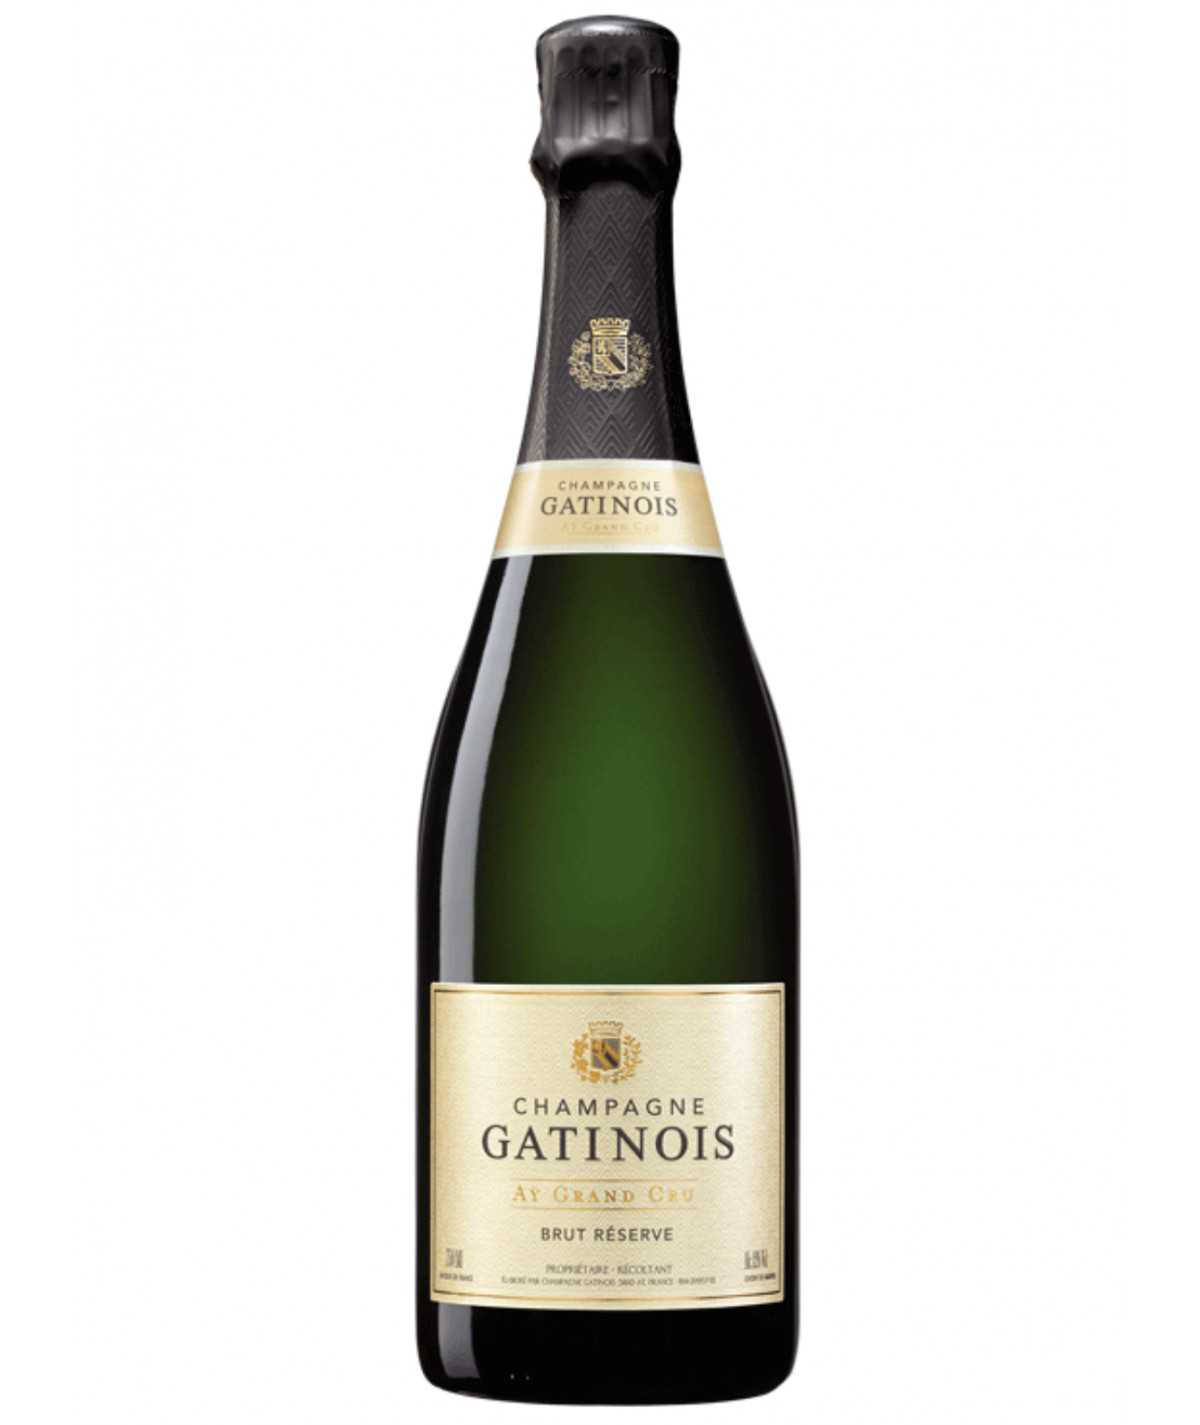 GATINOIS Champagne Brut Reserve Grand Cru